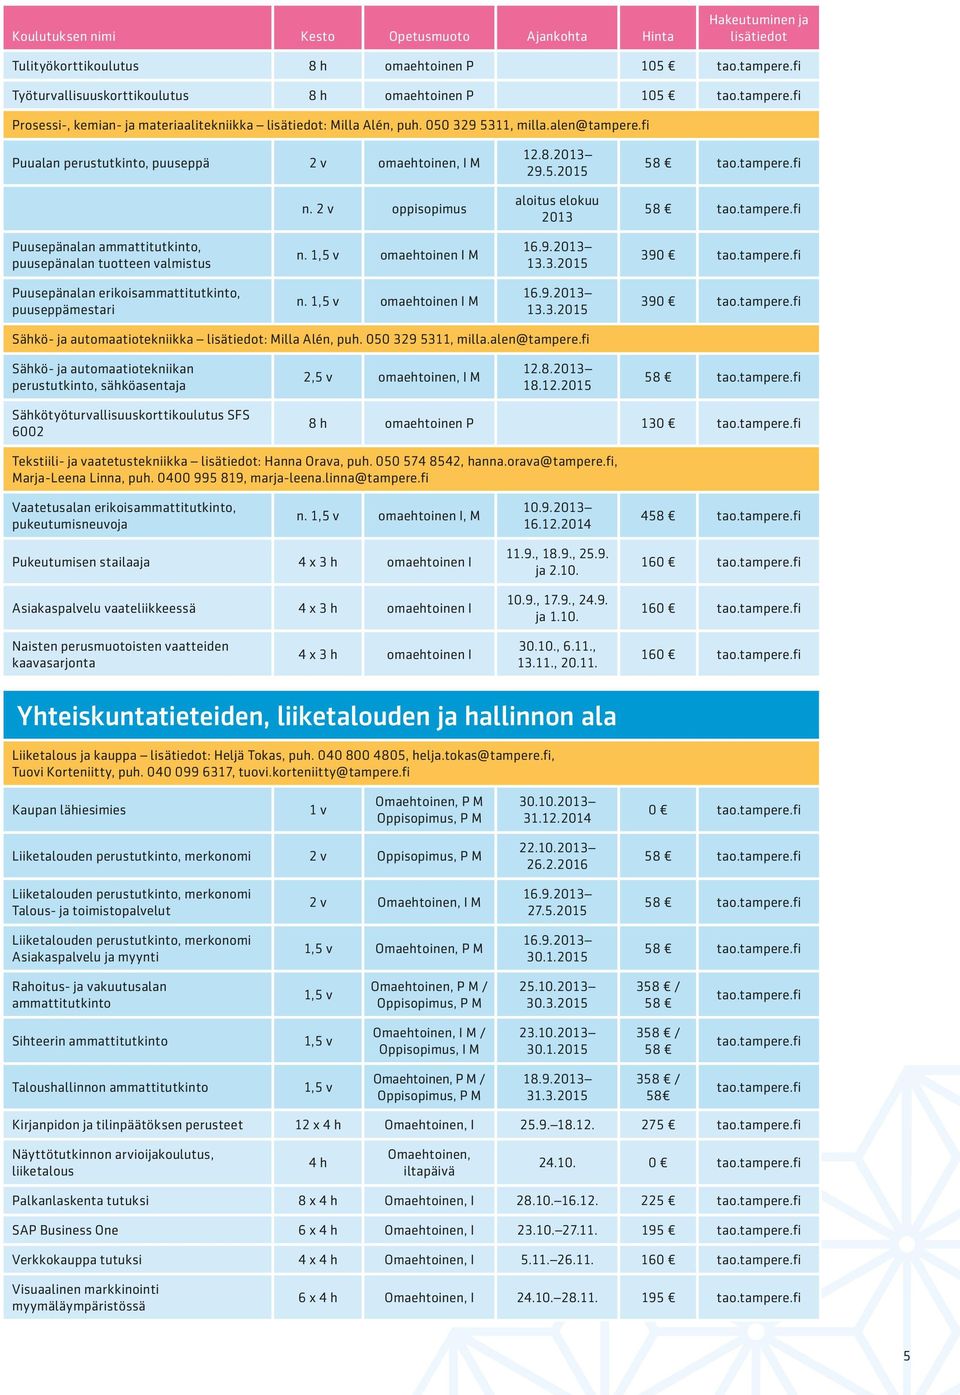 1,5 v omaehtoinen I M 13.3.2015 390 Sähkö- ja automaatiotekniikka : Milla Alén, puh. 050 329 5311, milla.alen@tampere.